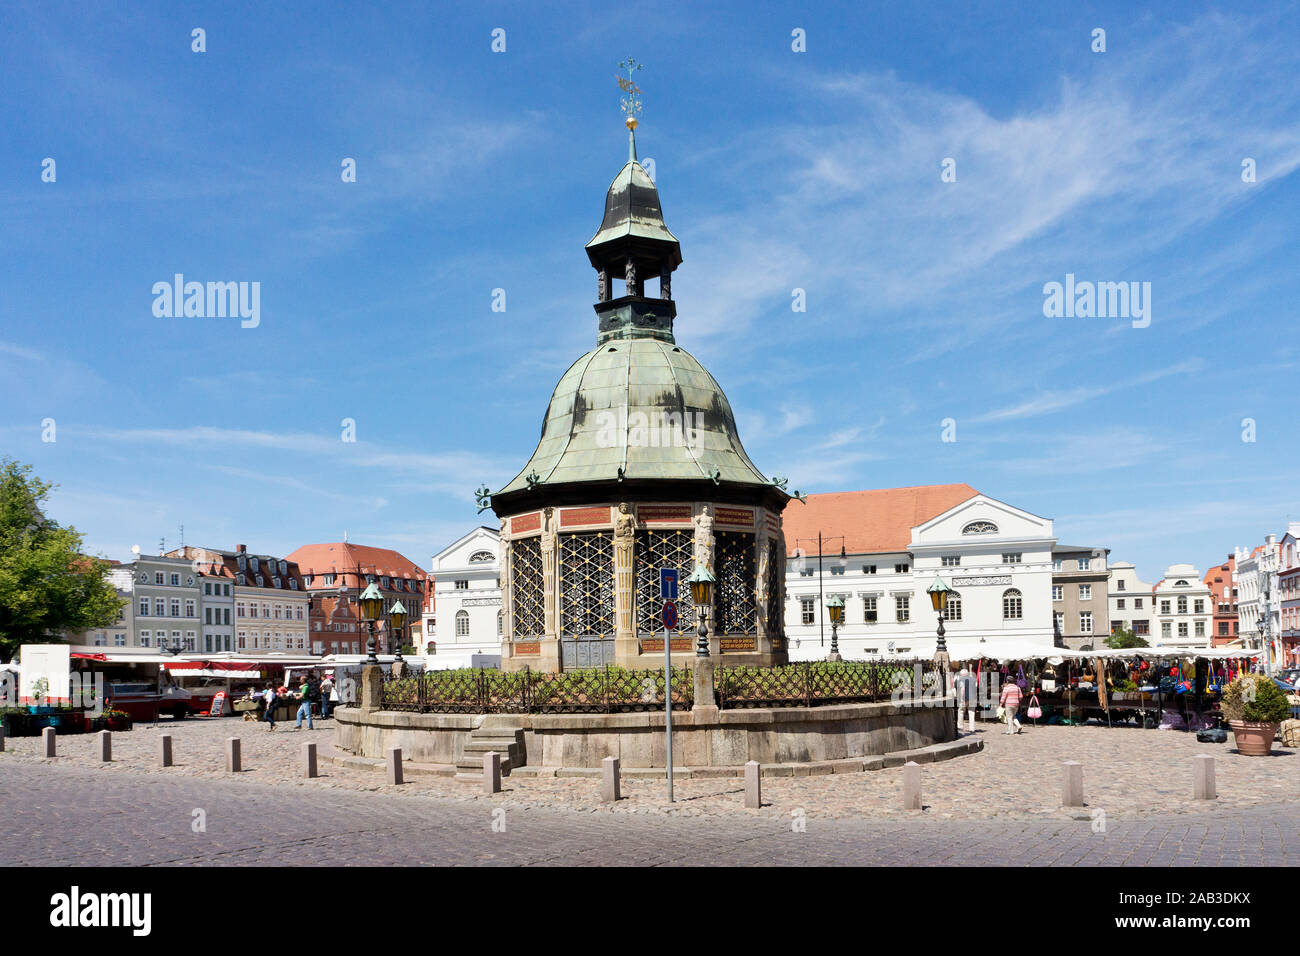 Marktplatz der Hansestadt Wismar mit dem Pavillon Wasserkunst |Market Square Wismar with the pavilion fountain| Stock Photo